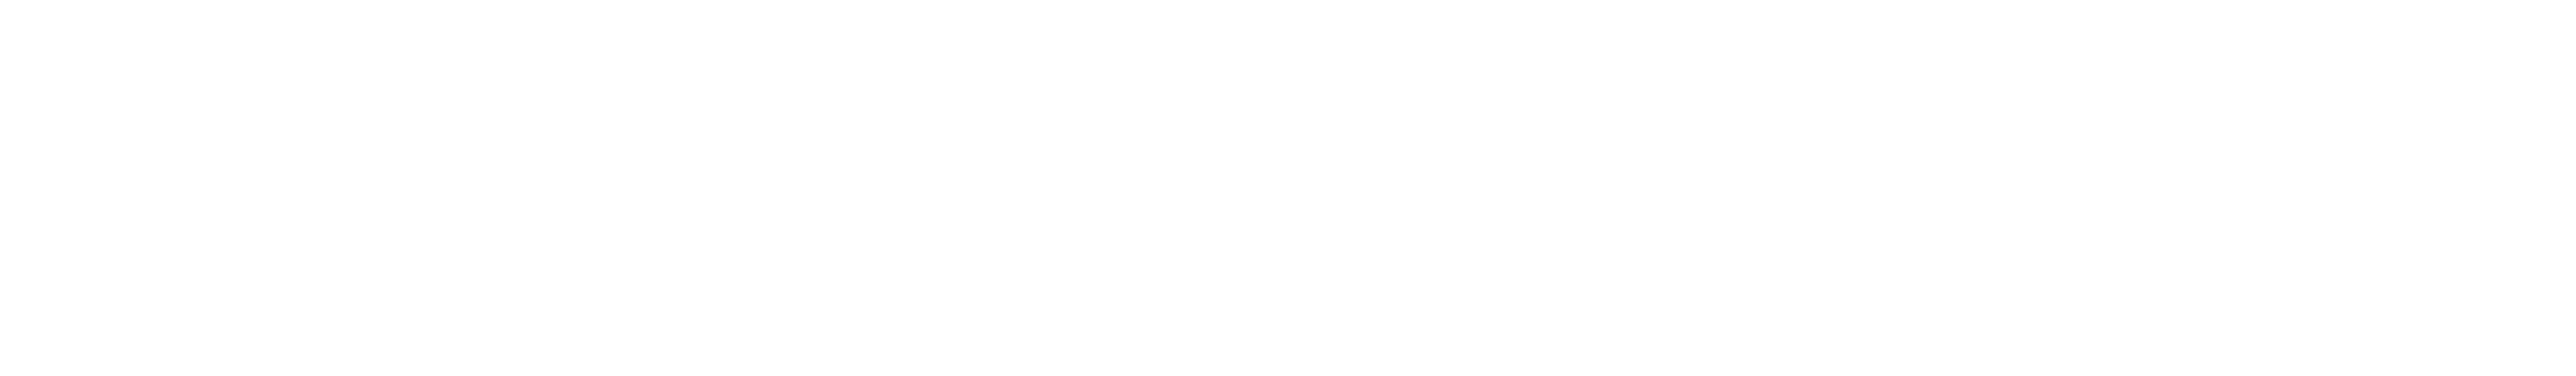 中南大学教育基金会